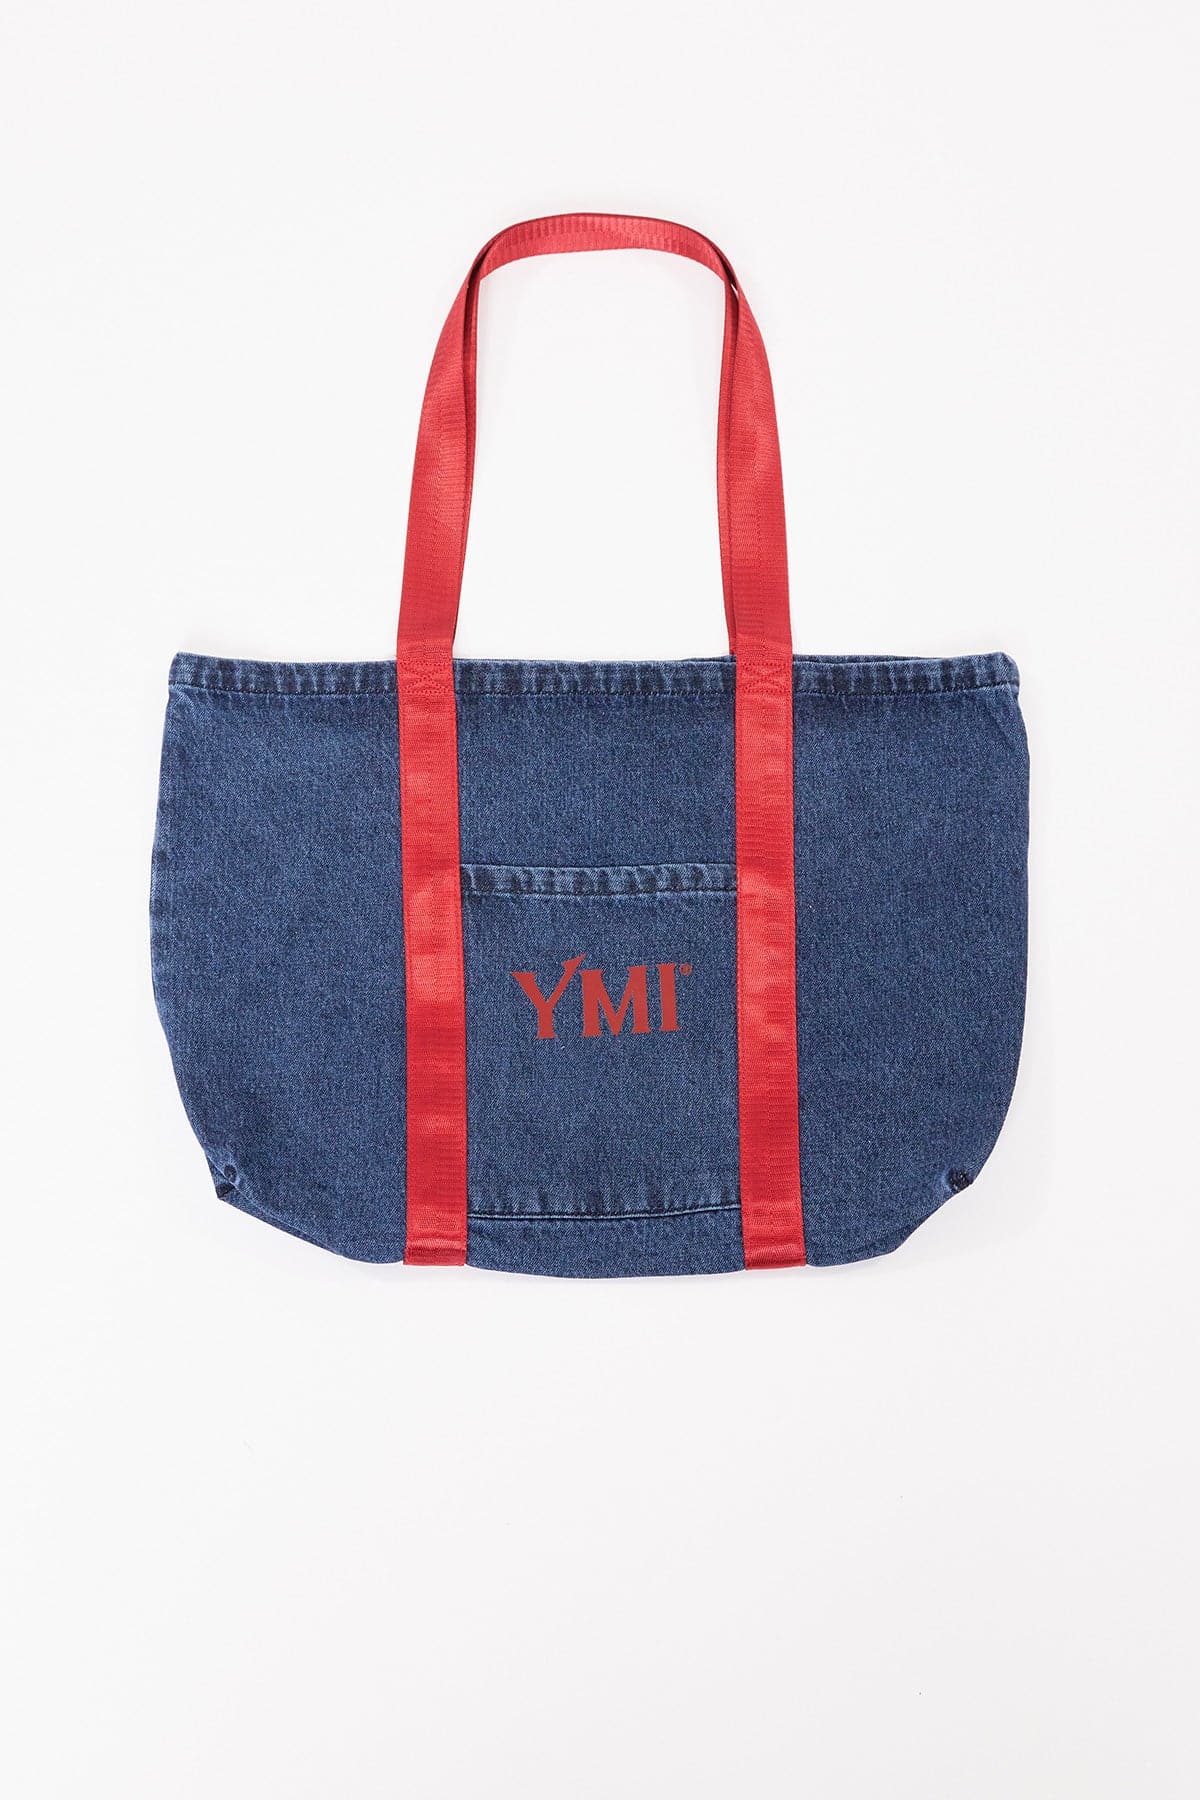 YMI Carryall Tote Bag